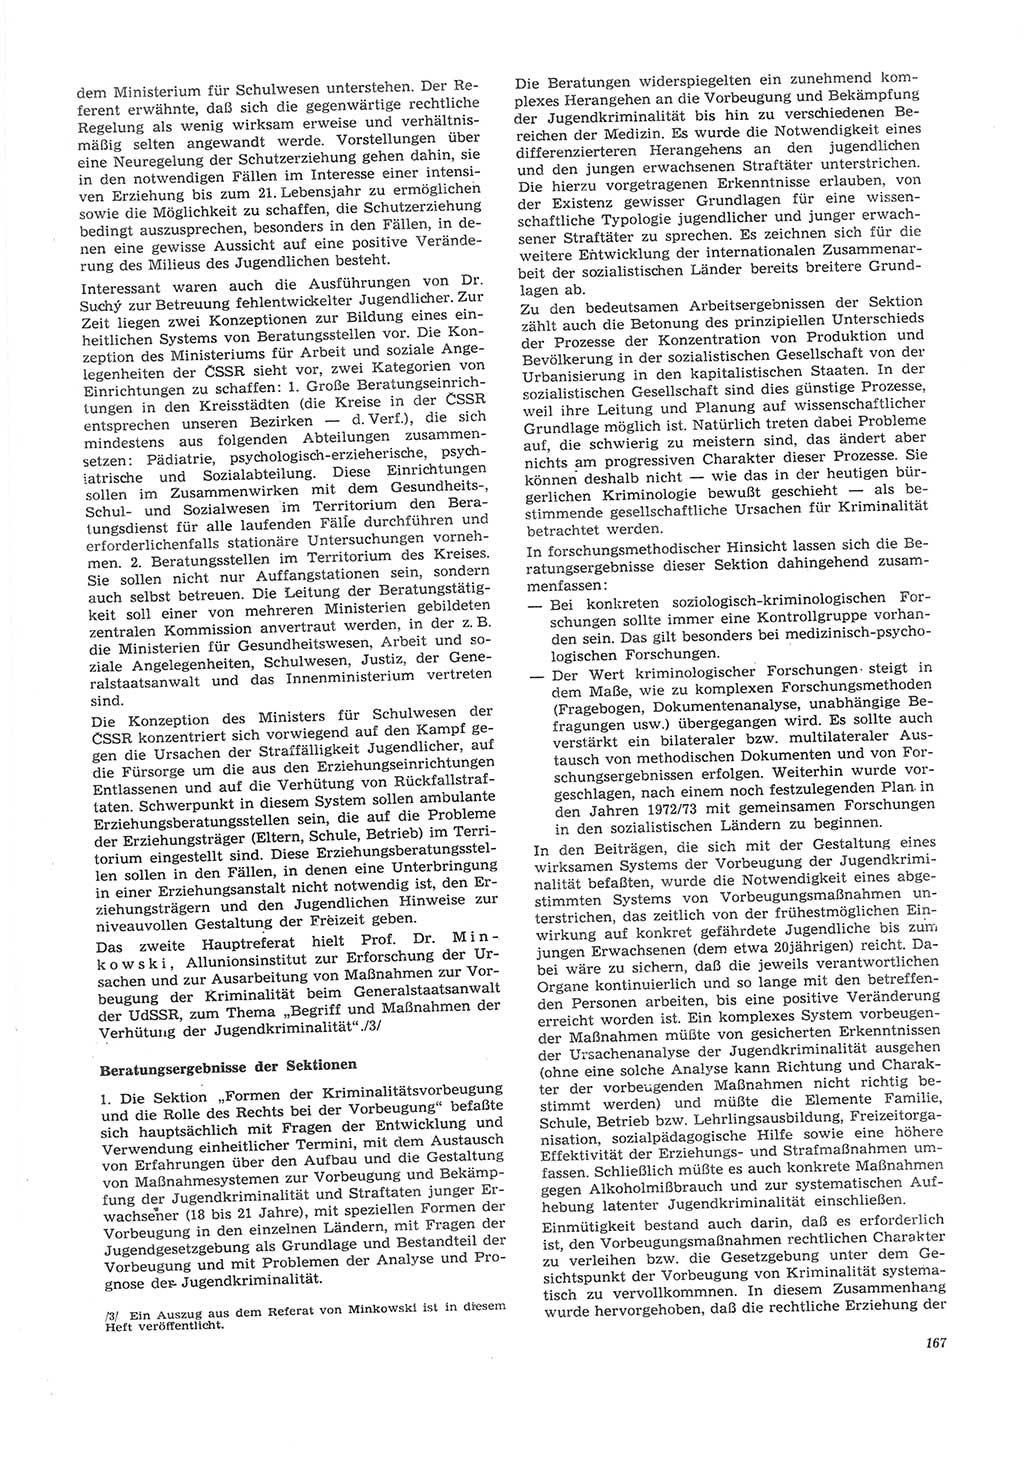 Neue Justiz (NJ), Zeitschrift für Recht und Rechtswissenschaft [Deutsche Demokratische Republik (DDR)], 26. Jahrgang 1972, Seite 167 (NJ DDR 1972, S. 167)